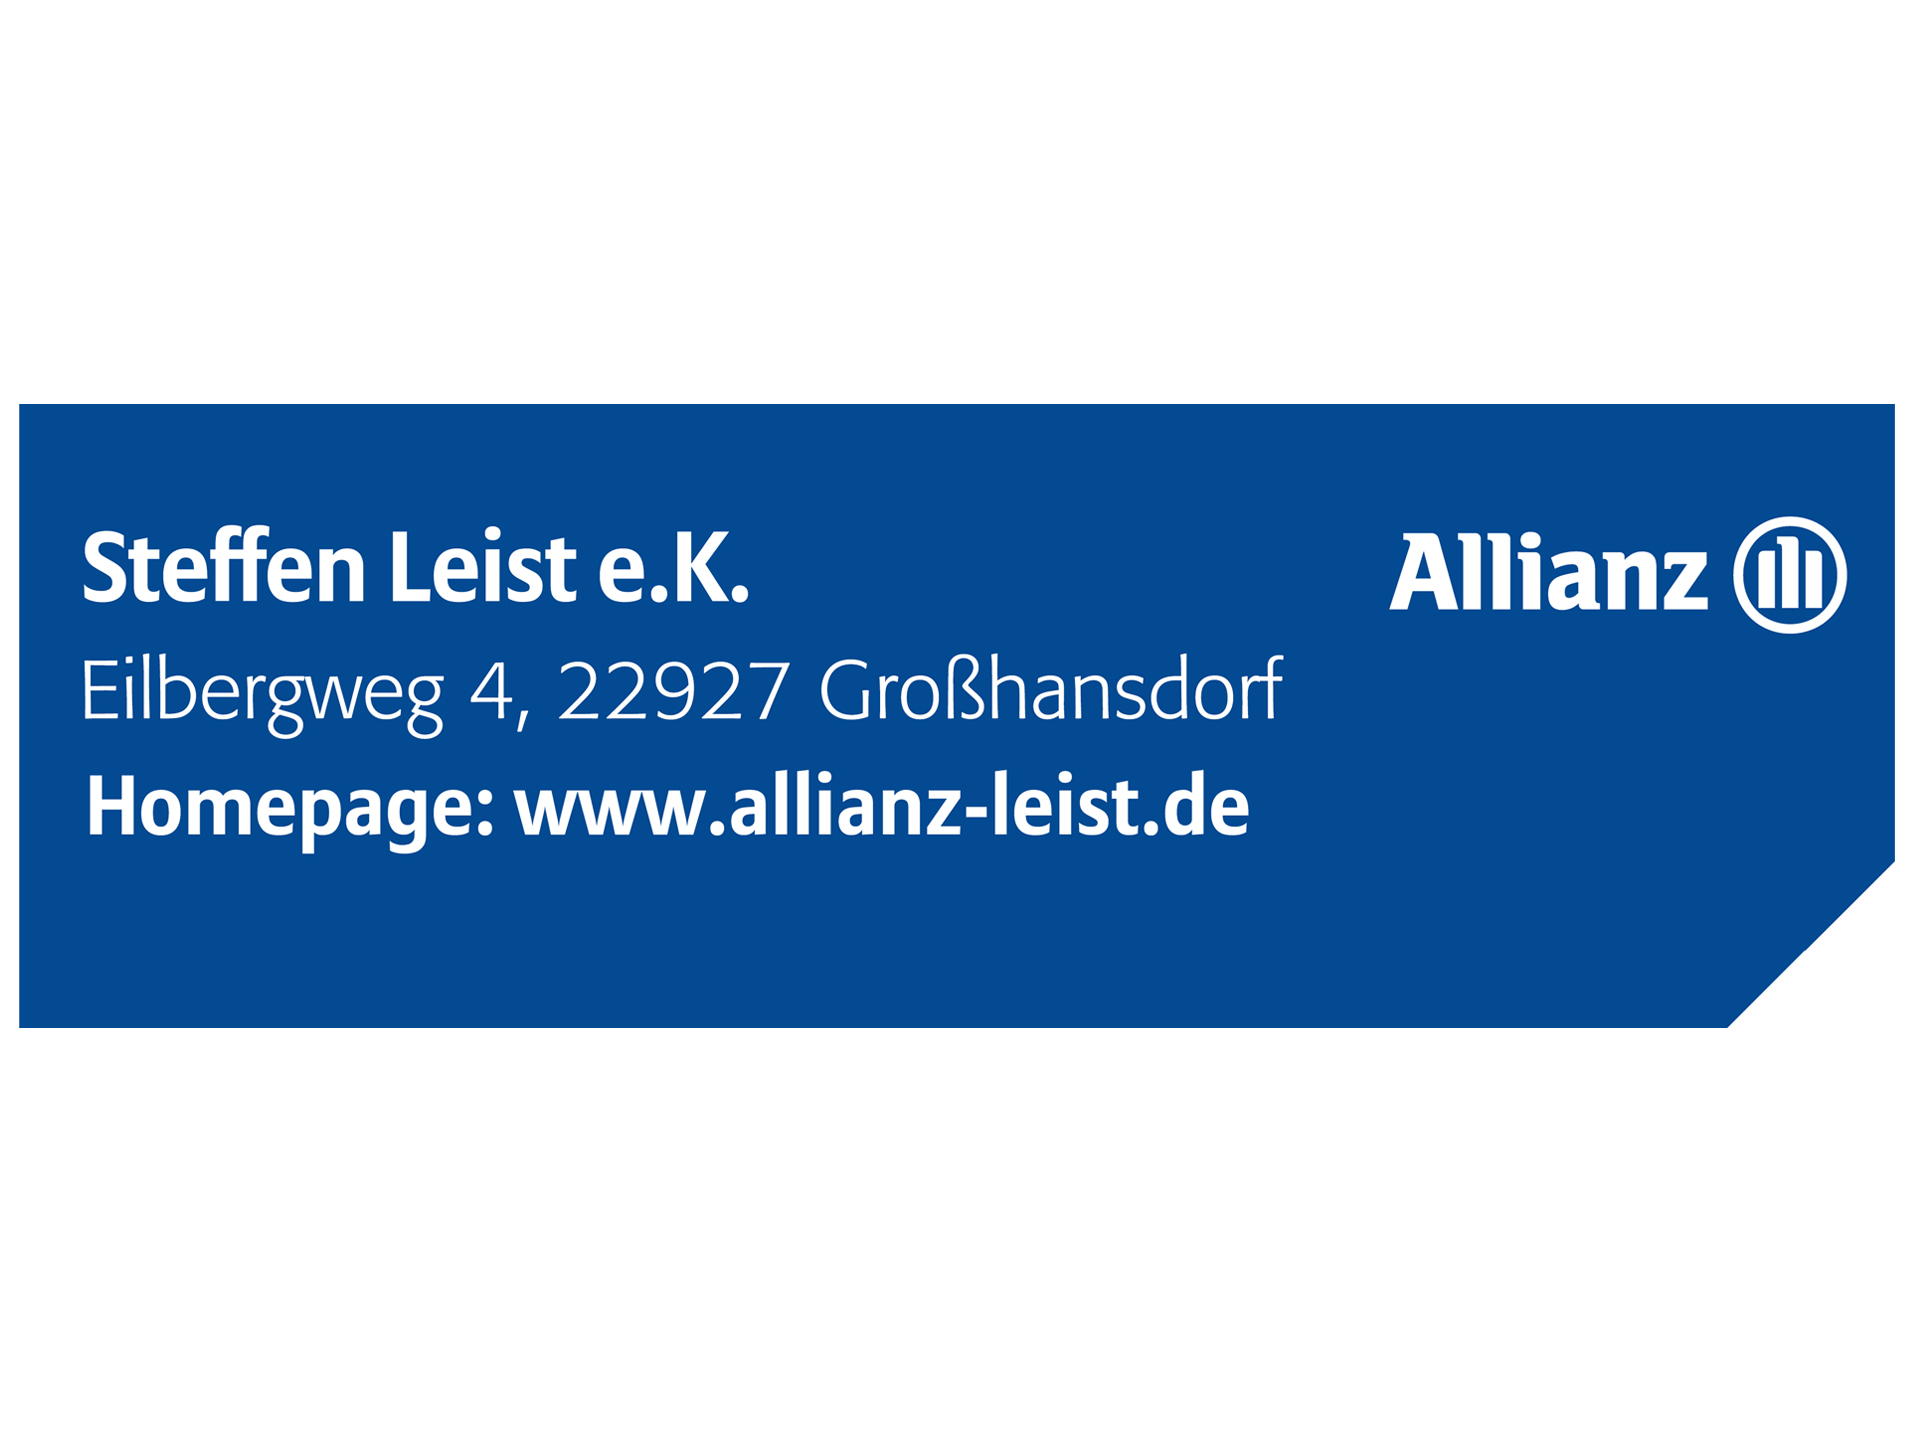 Steffen Leist e.K - Allianz